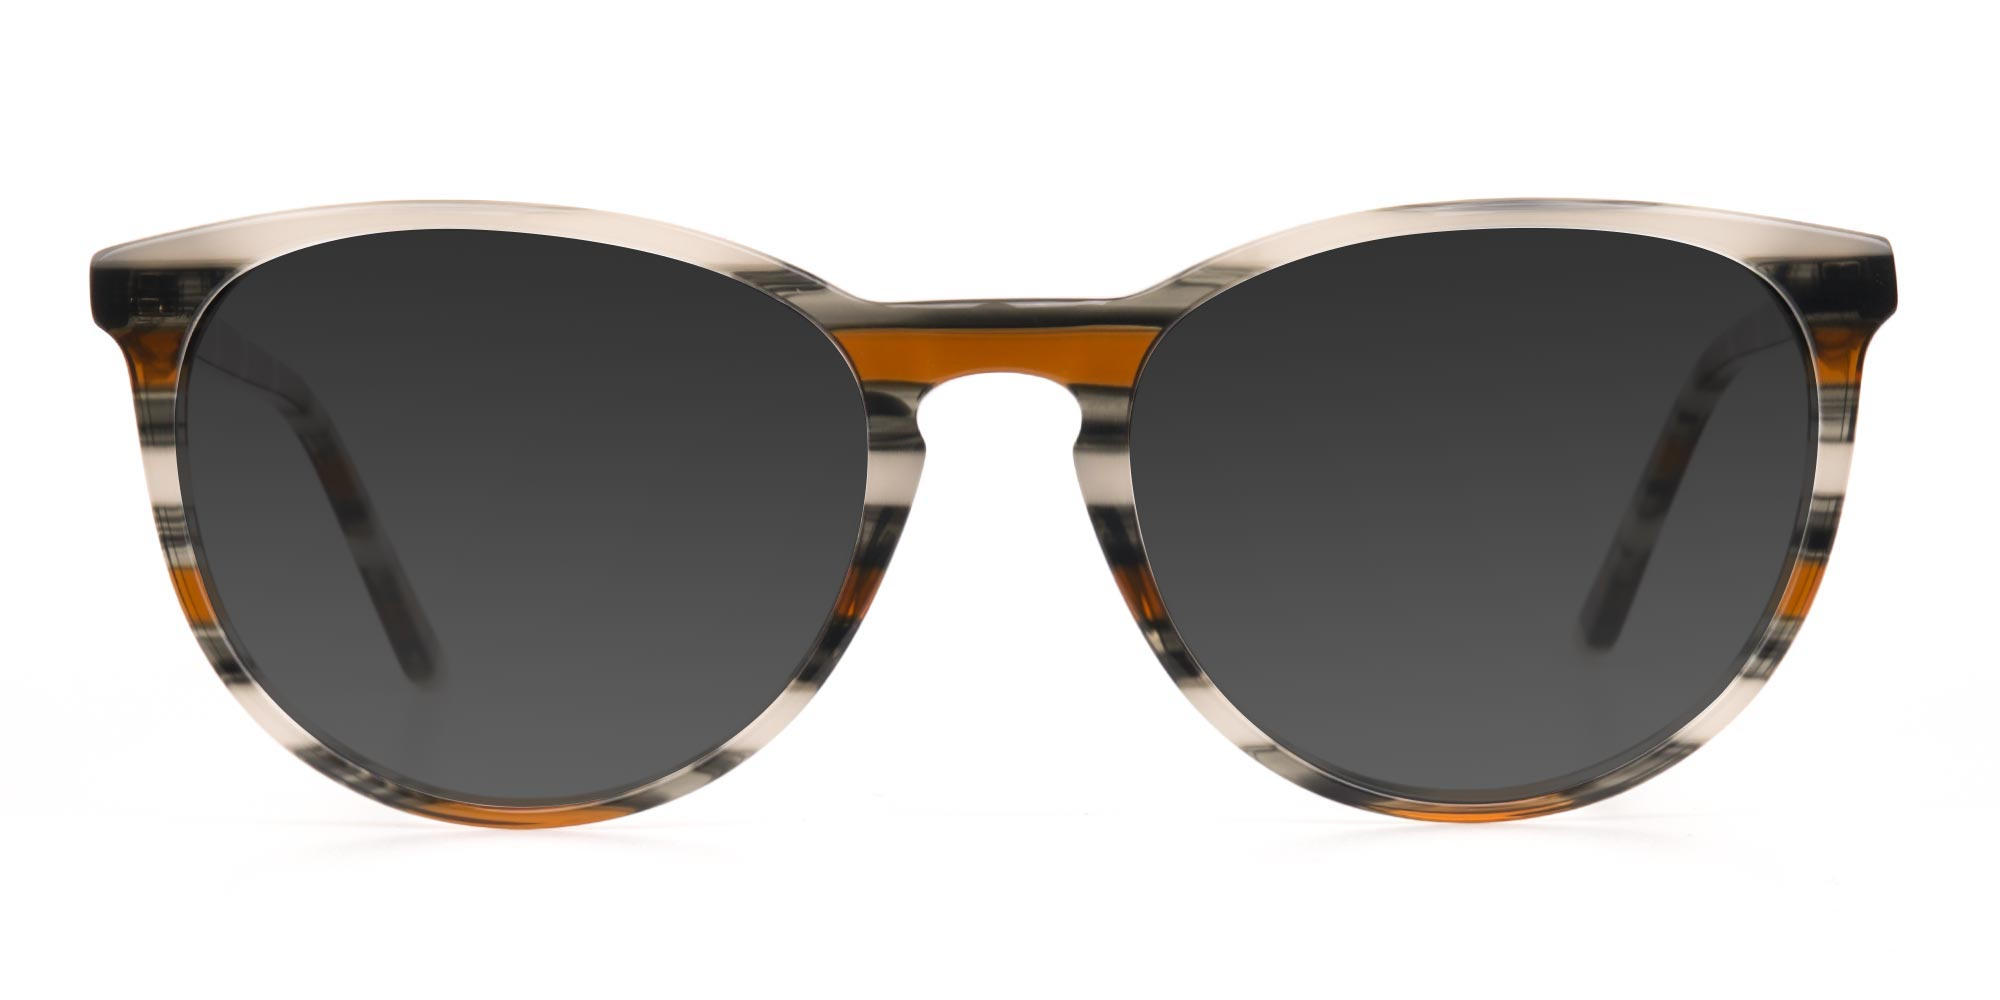 Silver Grey & Brown Striped Sunglasses - 3